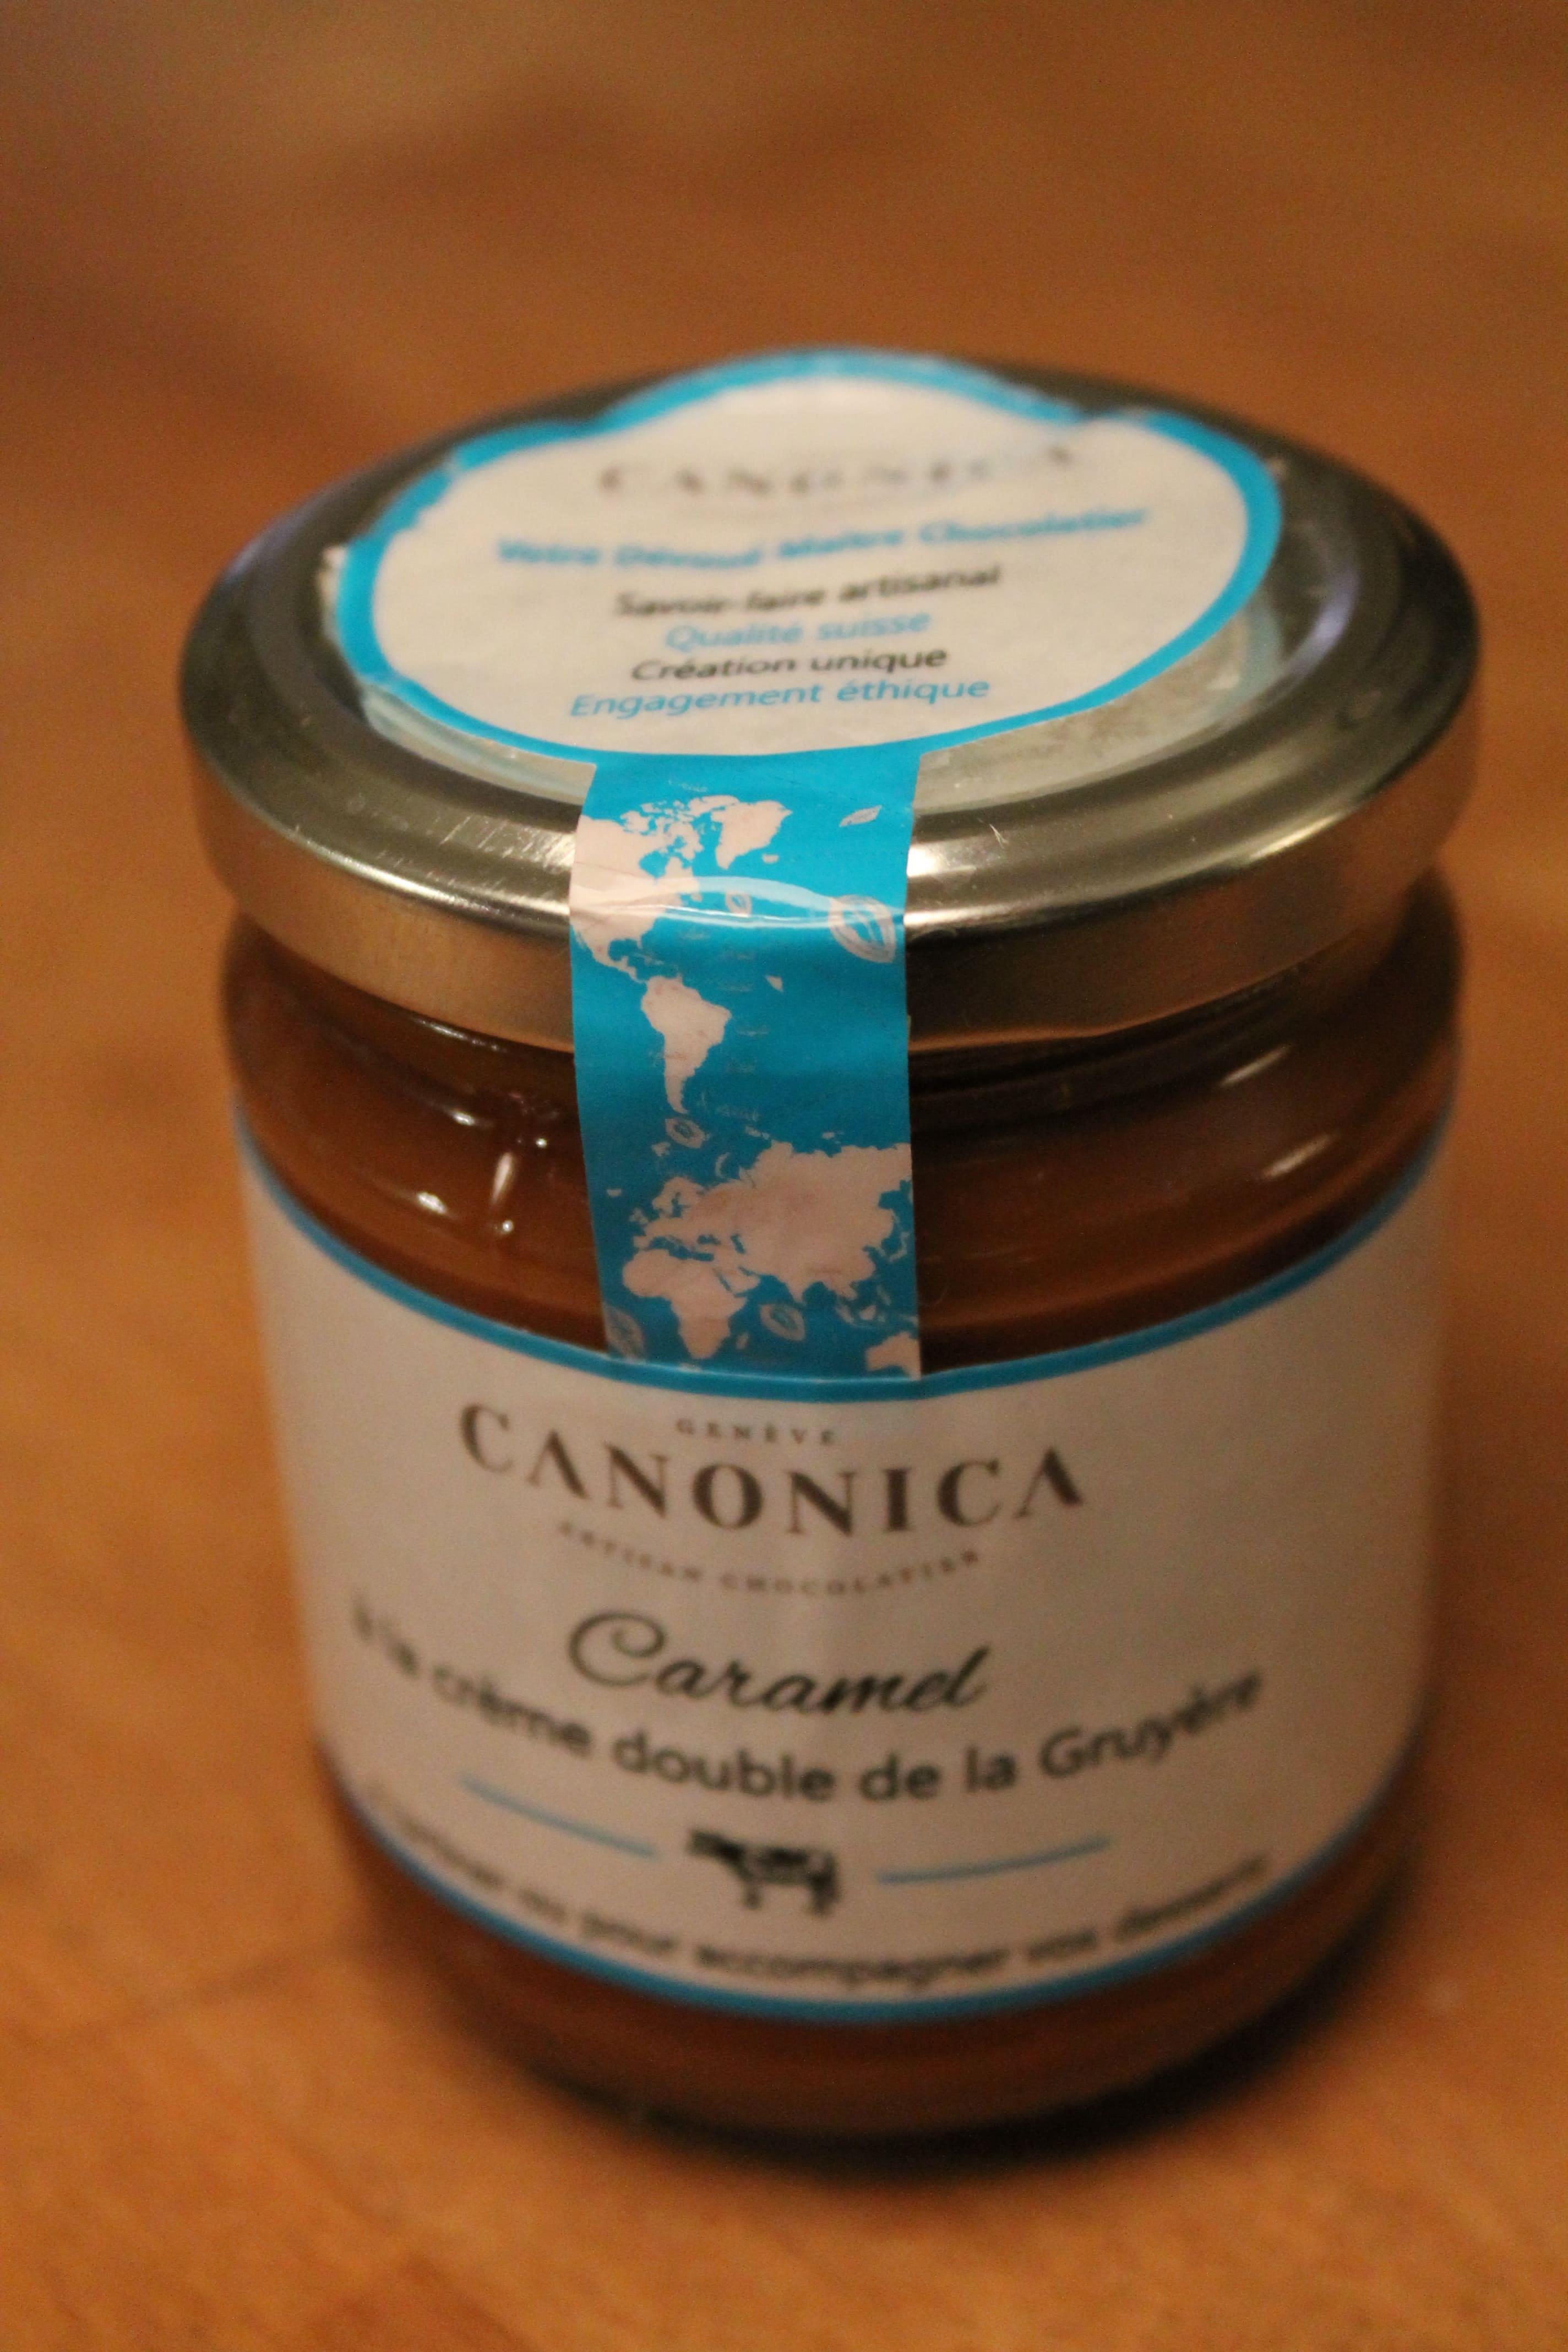 CANONICA - Caramel à la crème double de la Gruyère 